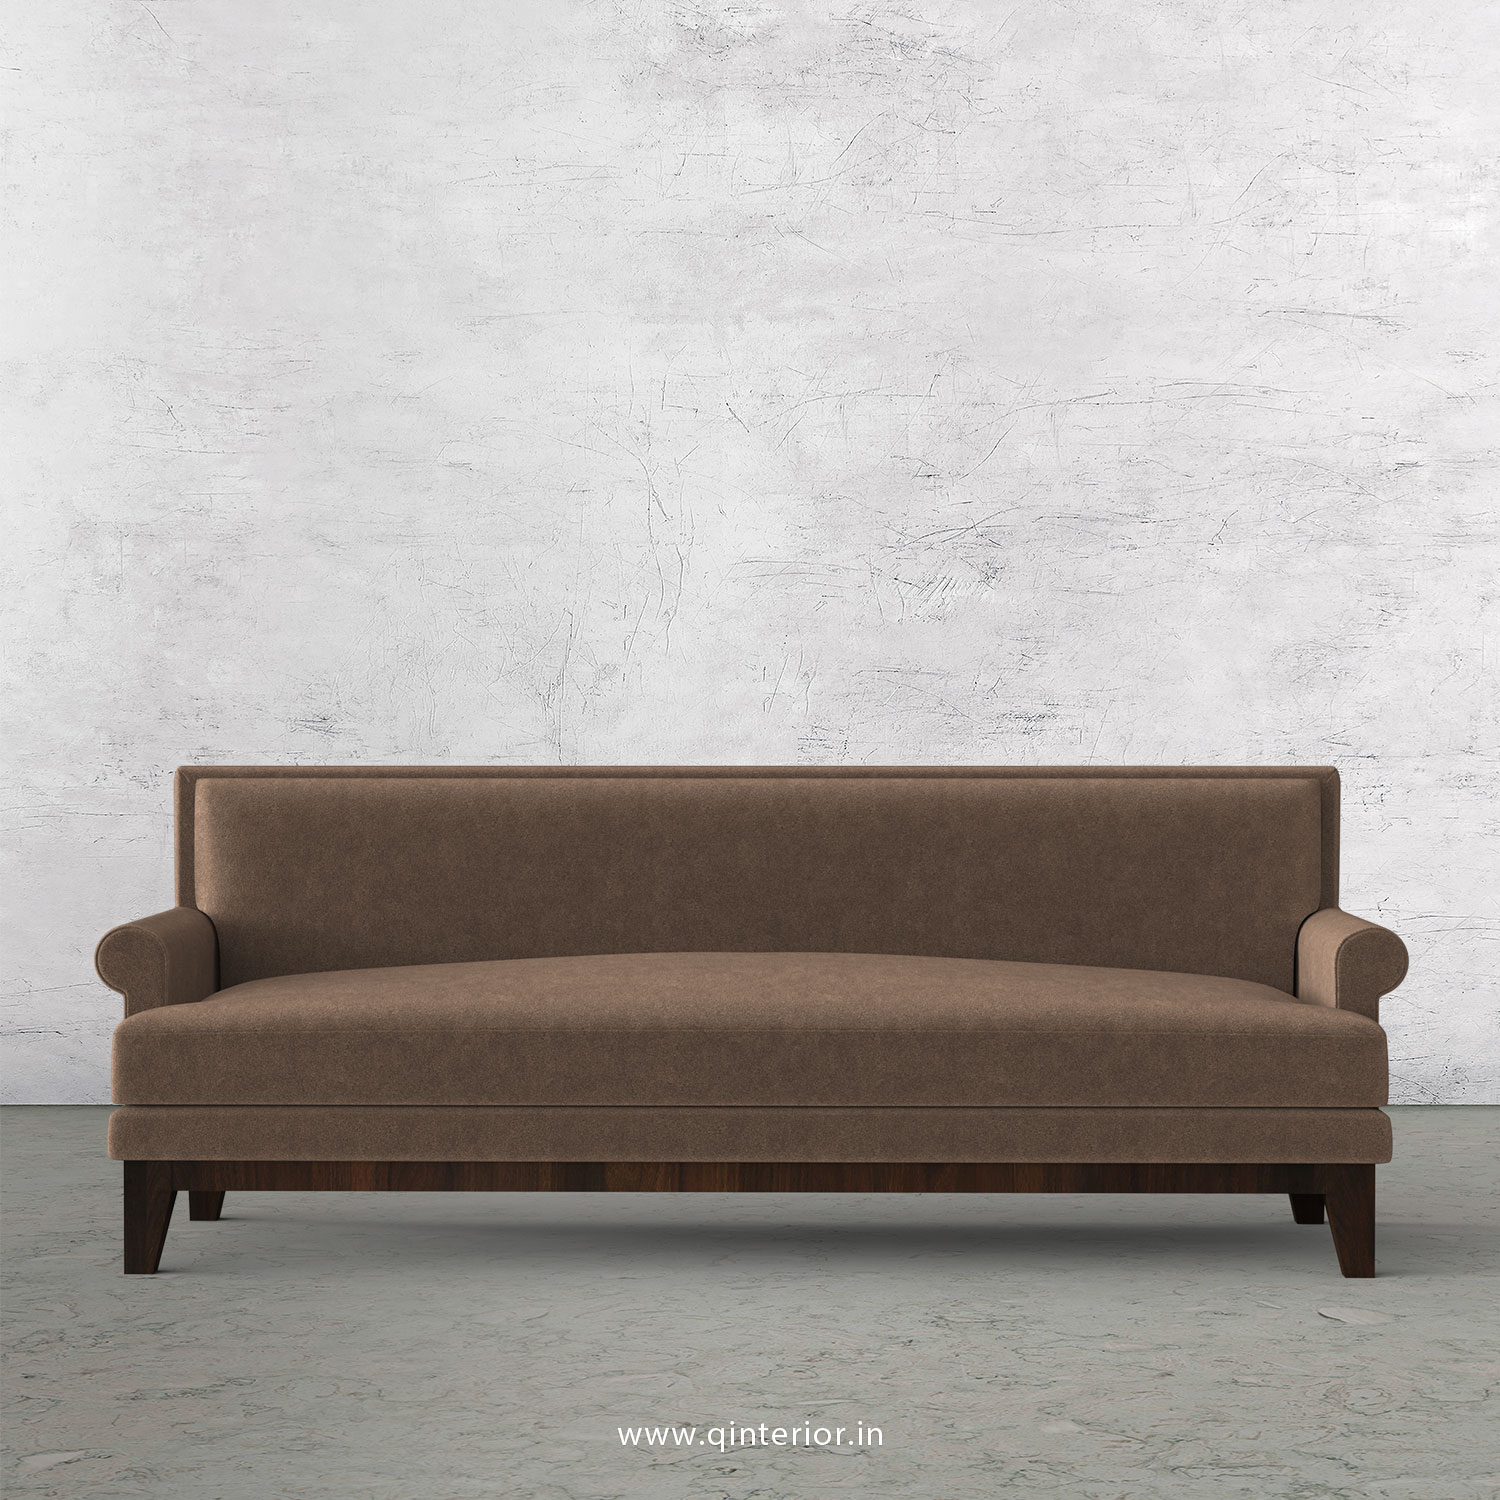 Aviana 3 Seater Sofa in Velvet Fabric - SFA001 VL02